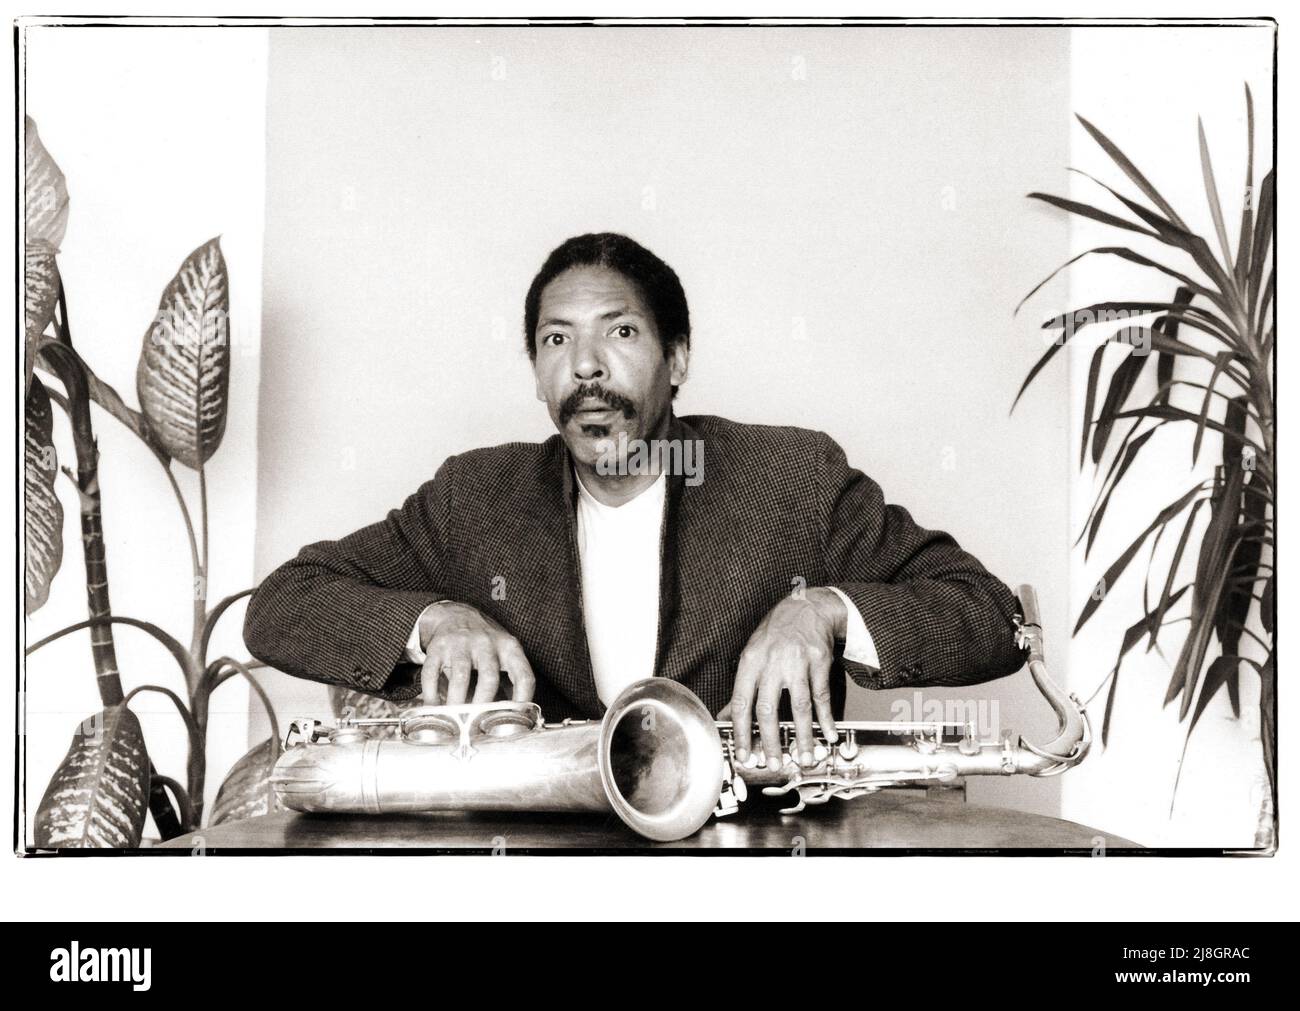 Ritratto dell'ultimo compositore jazz e sassofonista tenore Frank Lowe preso a Brooklyn, New York nel 1983. Foto Stock